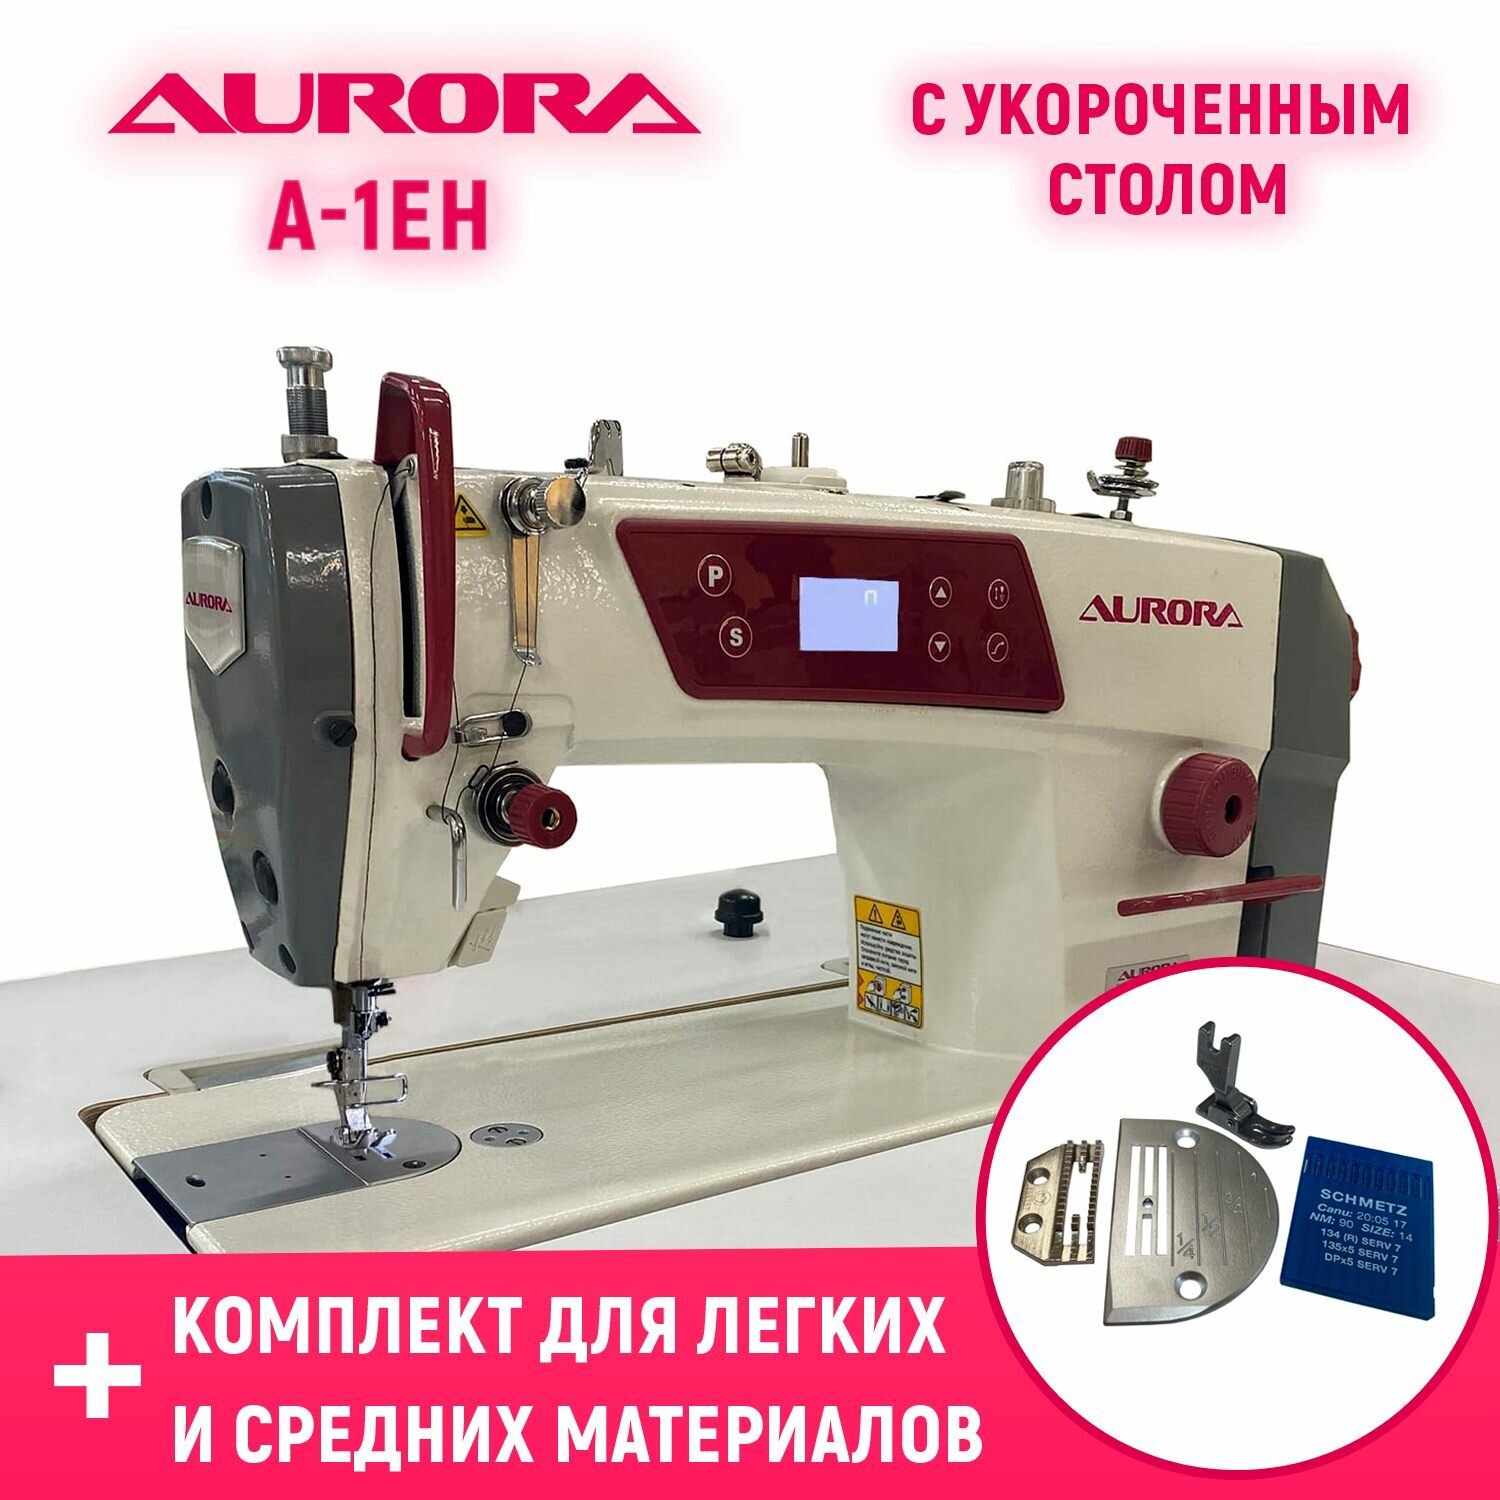 Прямострочная промышленная швейная машина Aurora A-1EH (A-8600H) с укороченным столом и комплектом для легких и средних материалов в подарок!